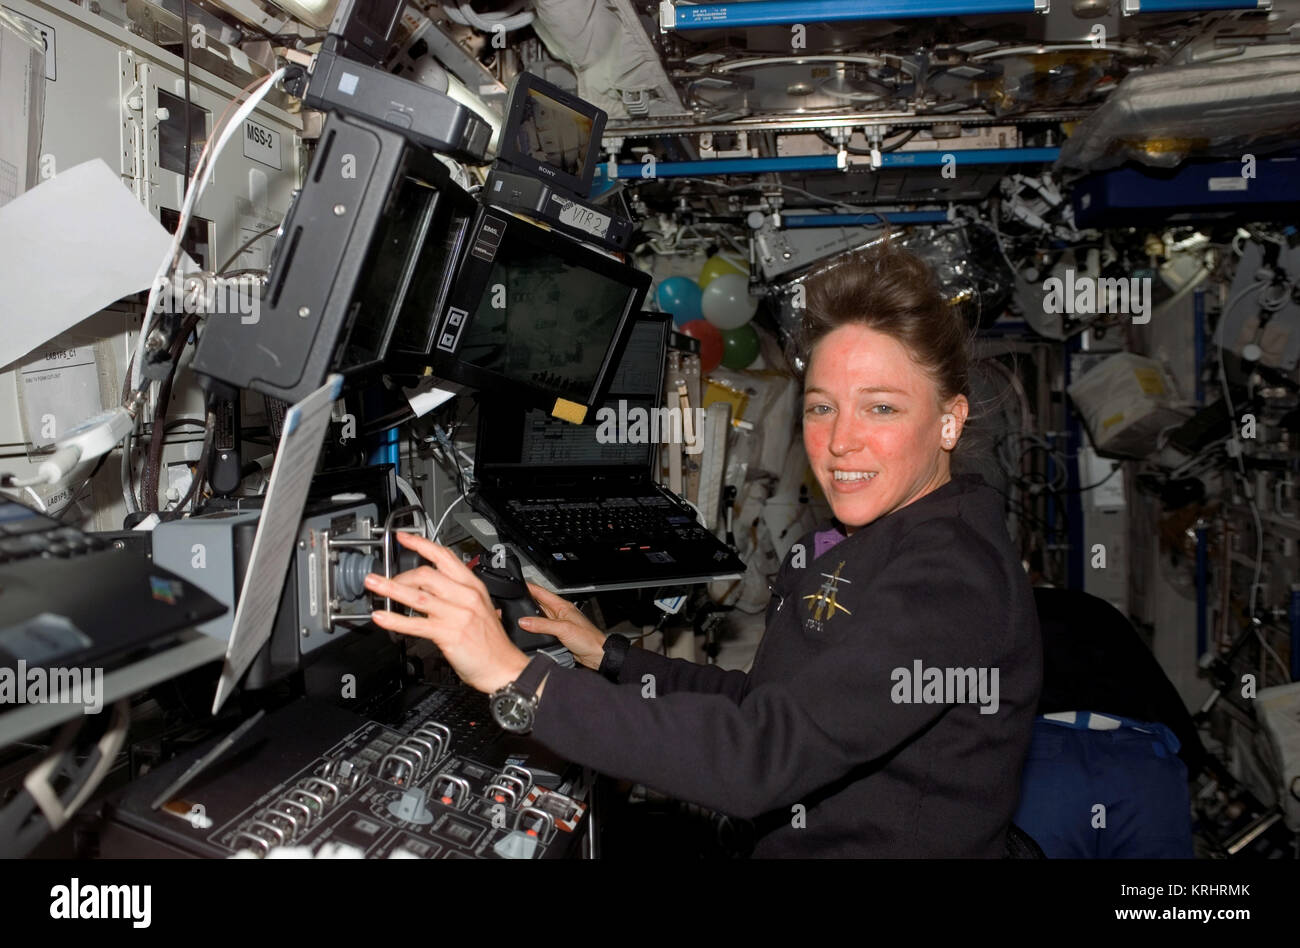 NASA Space Shuttle Discovery Internationale Raumstation Mission STS-121 prime Besatzungsmitglied amerikanische Astronautin Lisa Nowak arbeitet mit dem Roboterarm Canadarm2. In der ISS-Labor Destiny 12. Juli 2006 in der Erdumlaufbahn. Stockfoto